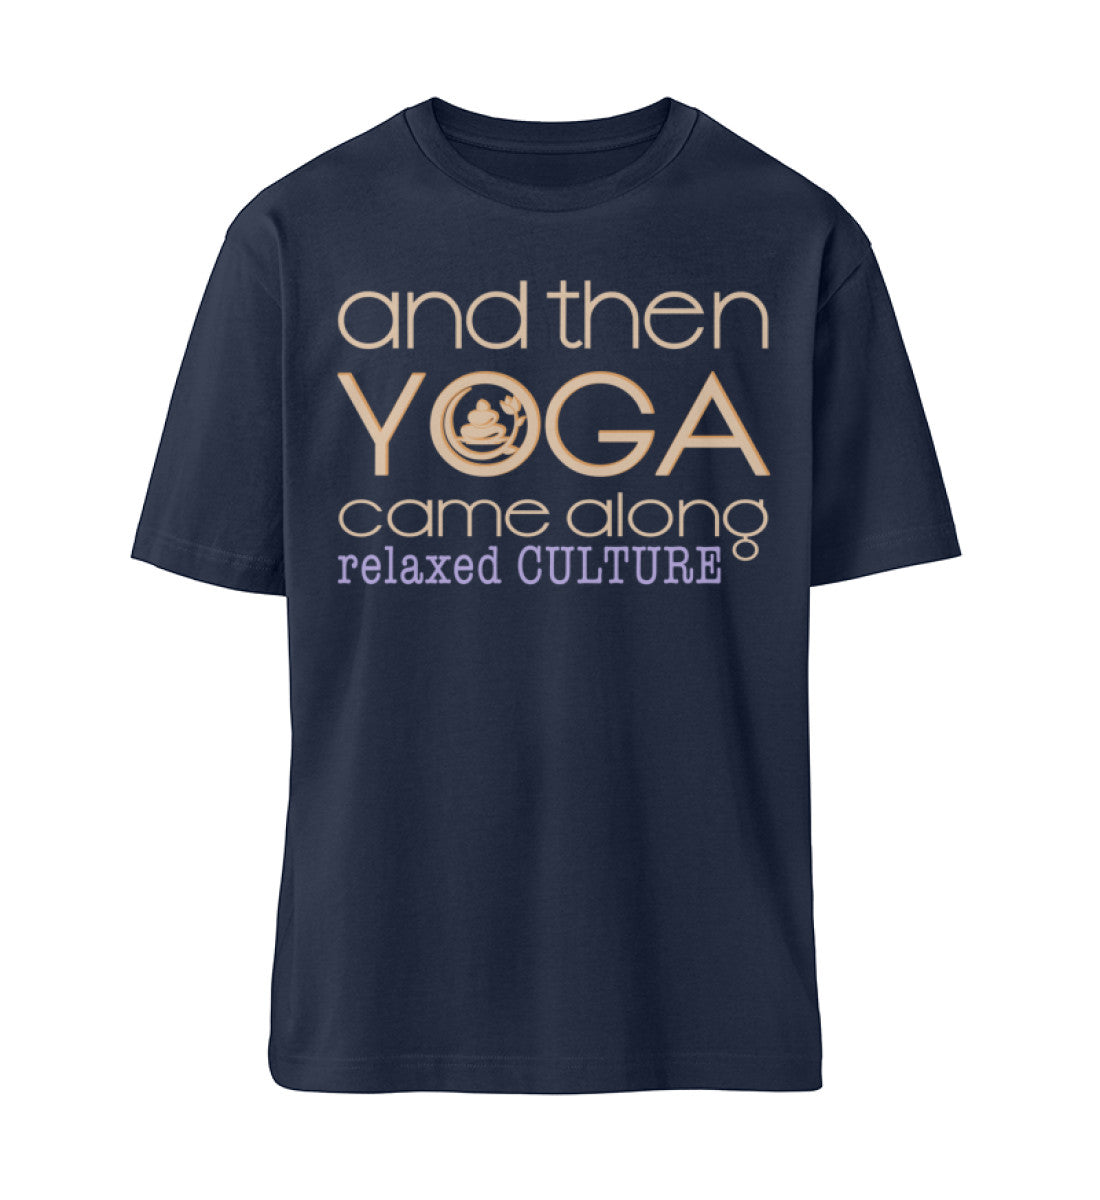 Navy Blue T-Shirt Unisex Relaxed Fit für Frauen und Männer bedruckt mit dem Design der Roger Rockawoo Kollektion and then yoga along